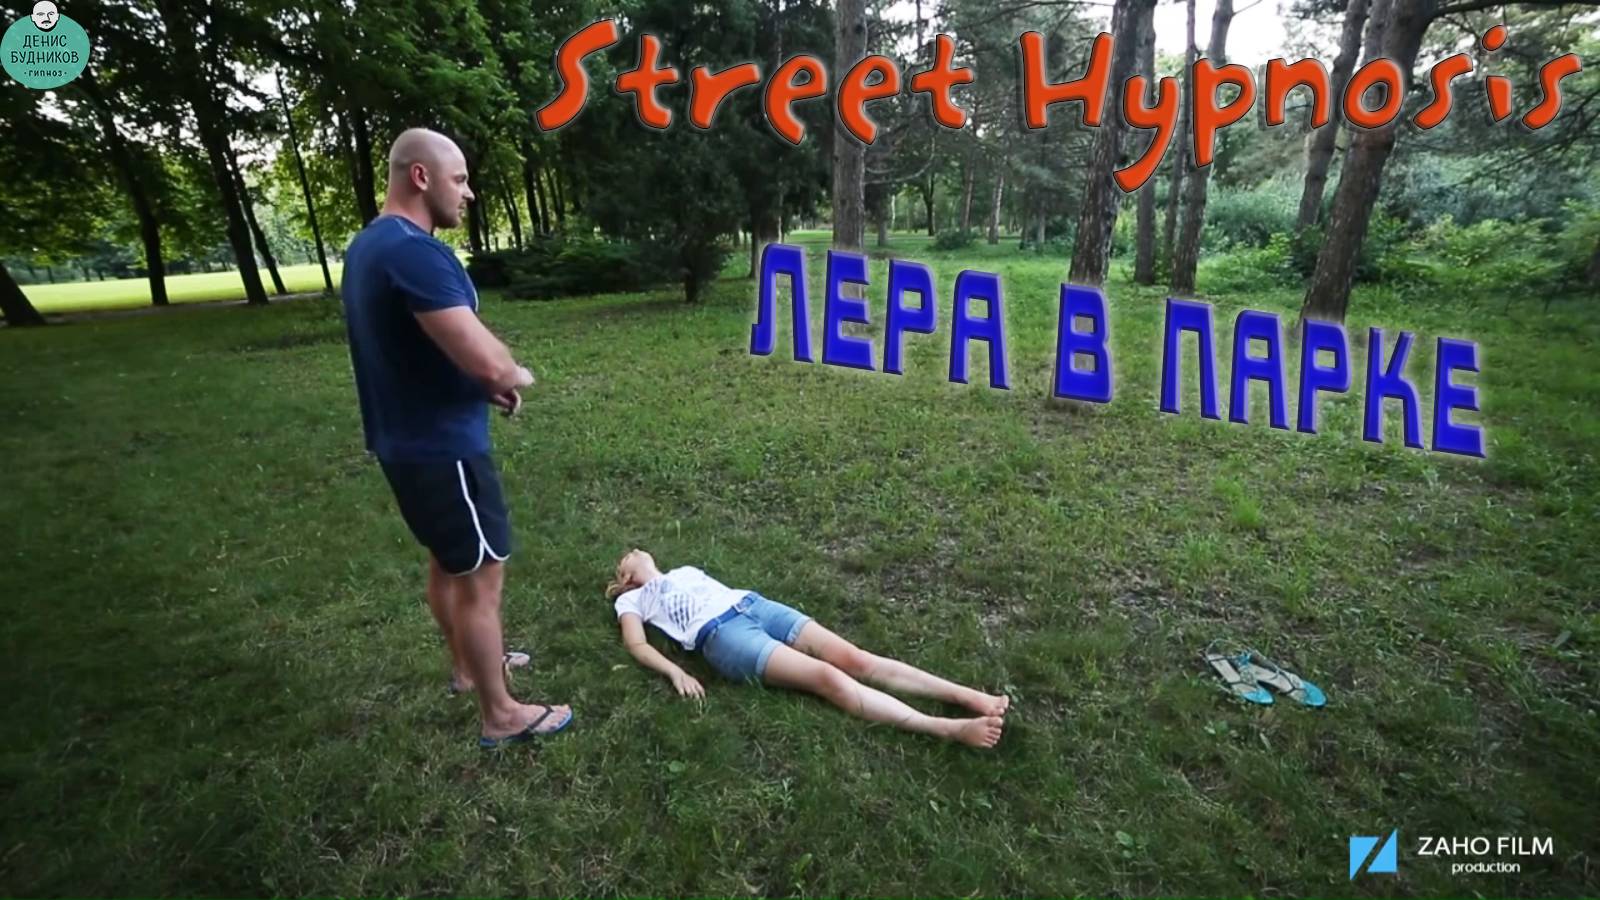 Street Show Hypnosis - Лера в парке (Уличный Гипноз)